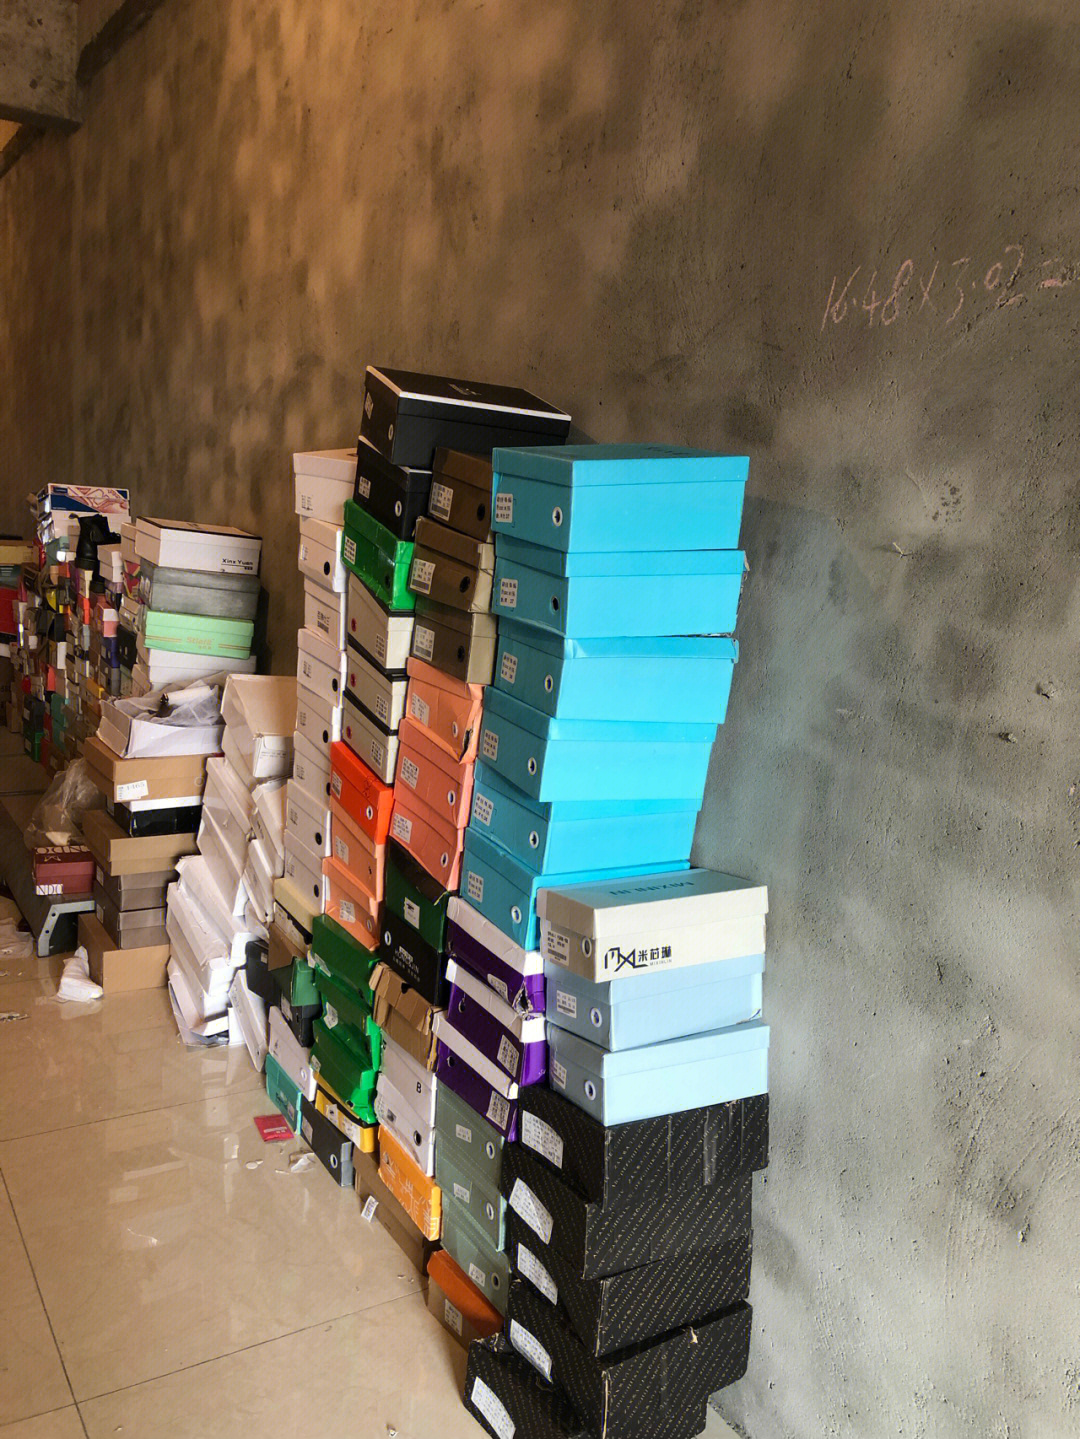 唉难受看到仓库还有几百双鞋,今年又准备和鞋子过年了